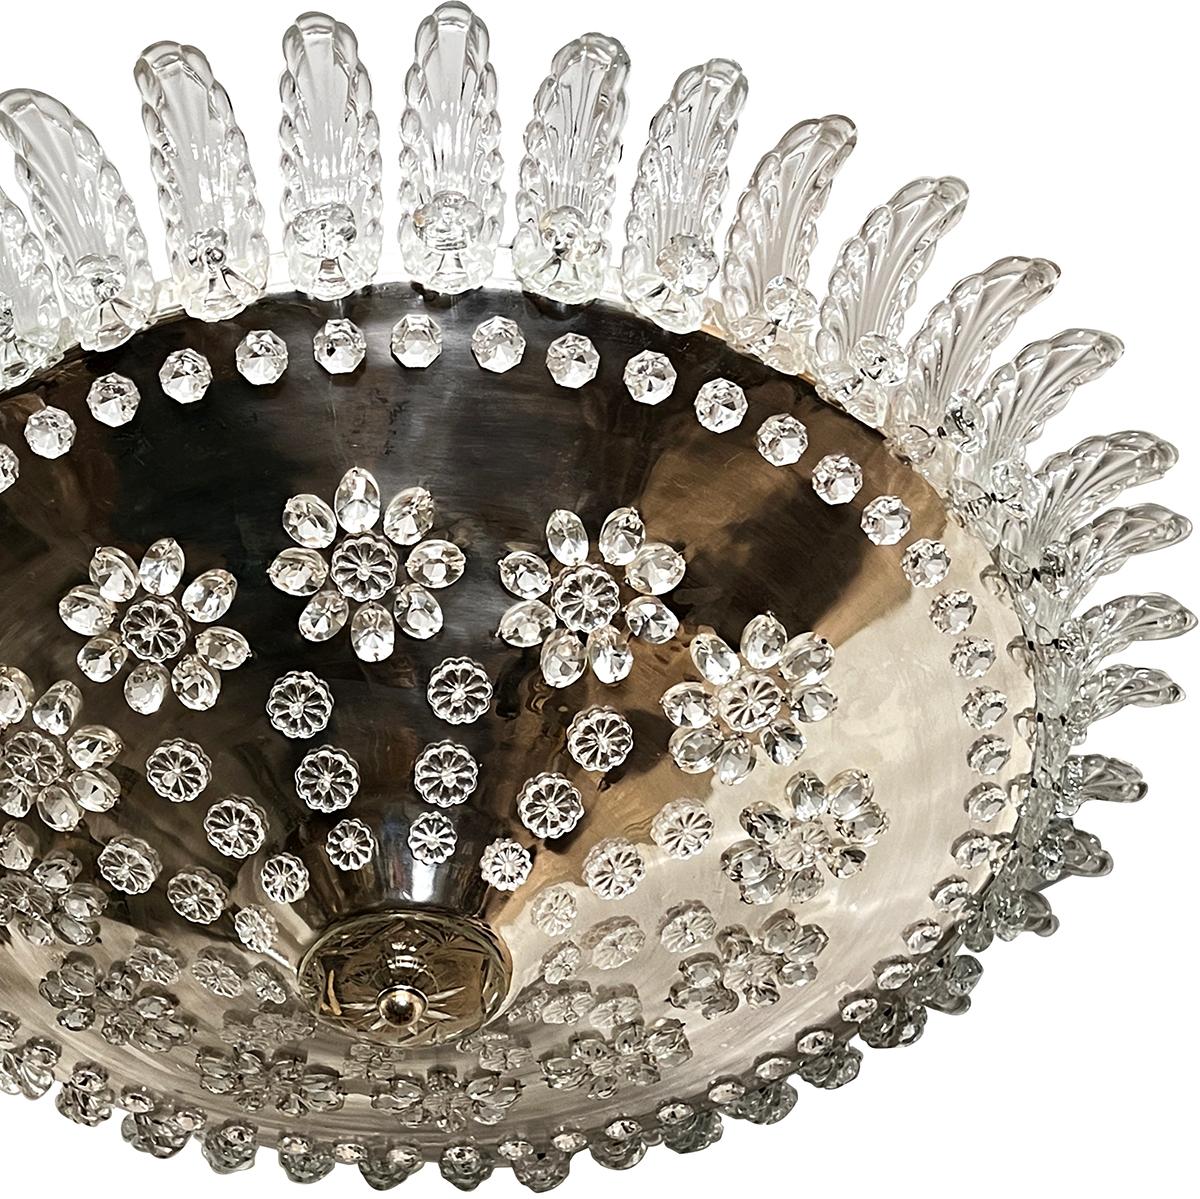 Eine französische versilberte Leuchte aus den 1940er Jahren mit Kristalleinsätzen auf dem Korpus, die Blumen und Kristalljuwelen in einem konzentrischen Muster bilden, geformten Glasblättern, die den Korpus krönen, und 4 inneren Edison-Lampen.